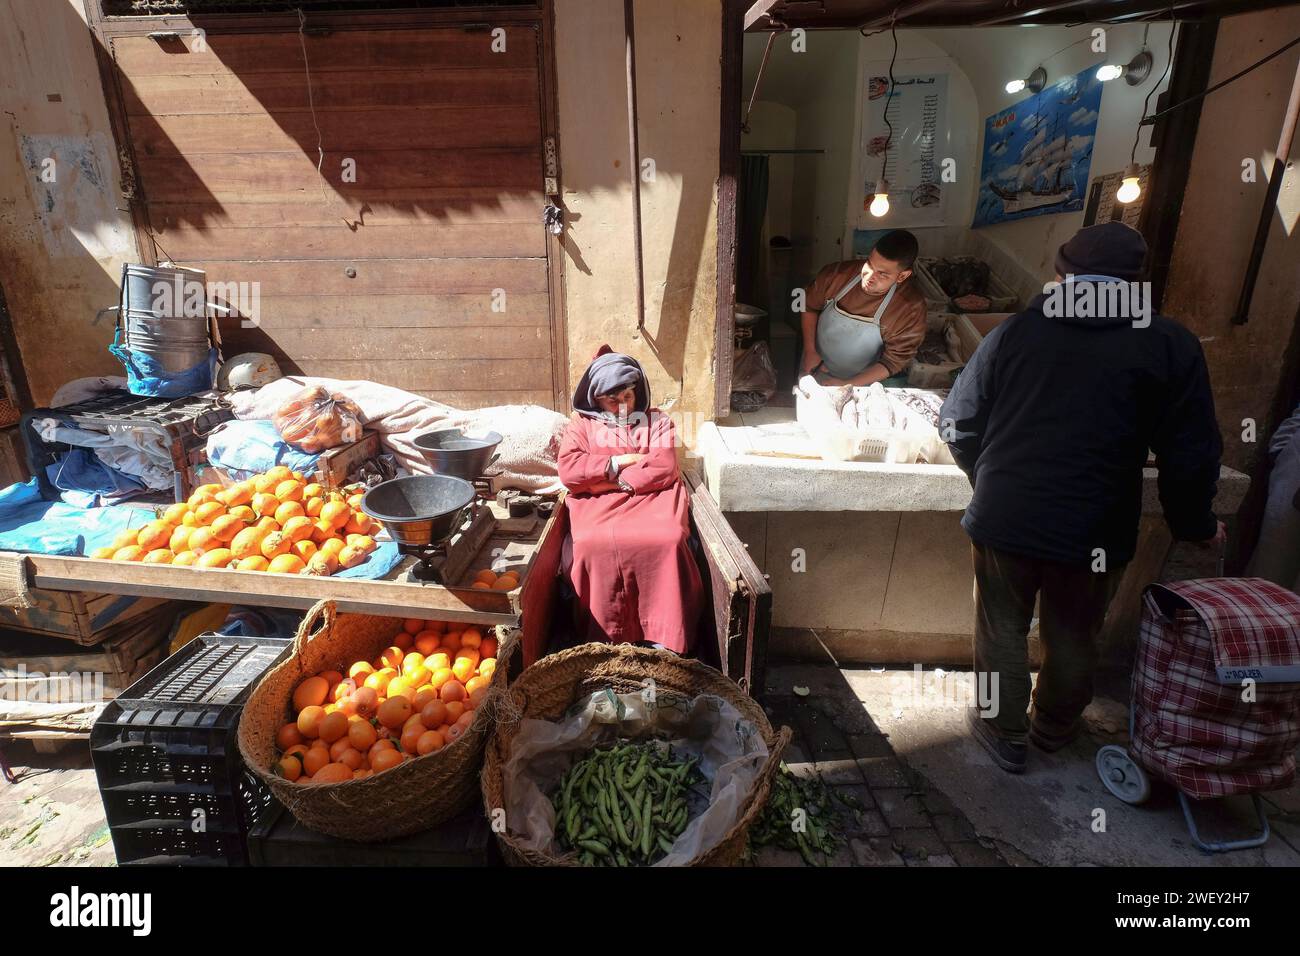 Vieil homme vendant des fruits et légumes dans le souk du marché en bordure de route dans la ville de Fès au Maroc. Commerces locaux sur la route. Banque D'Images